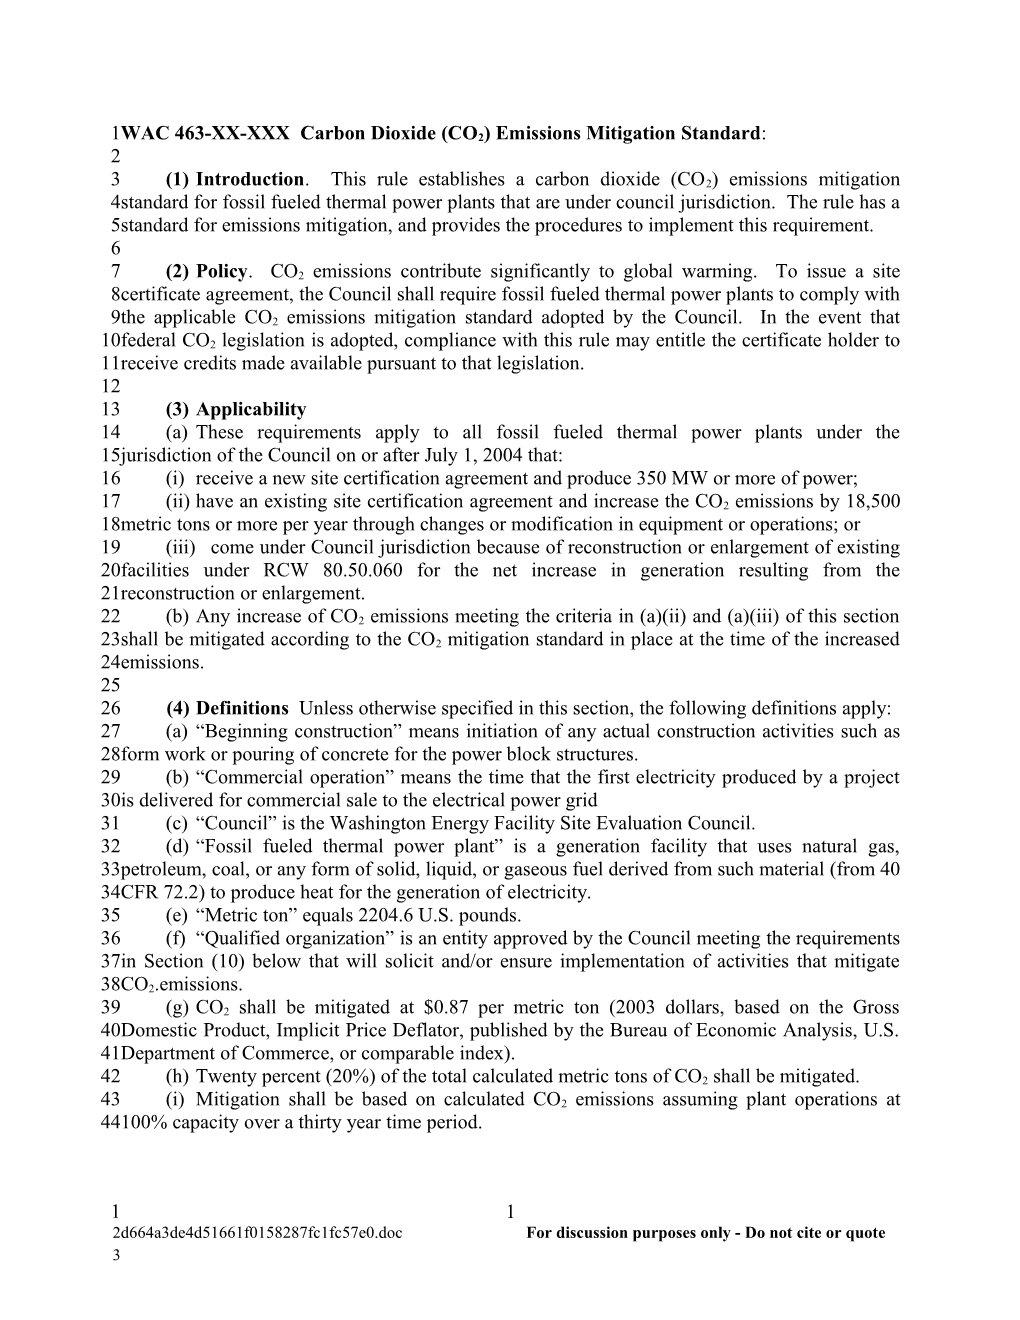 WAC 463-XX-XXX Draft Carbon Dioxide Emissions Standard